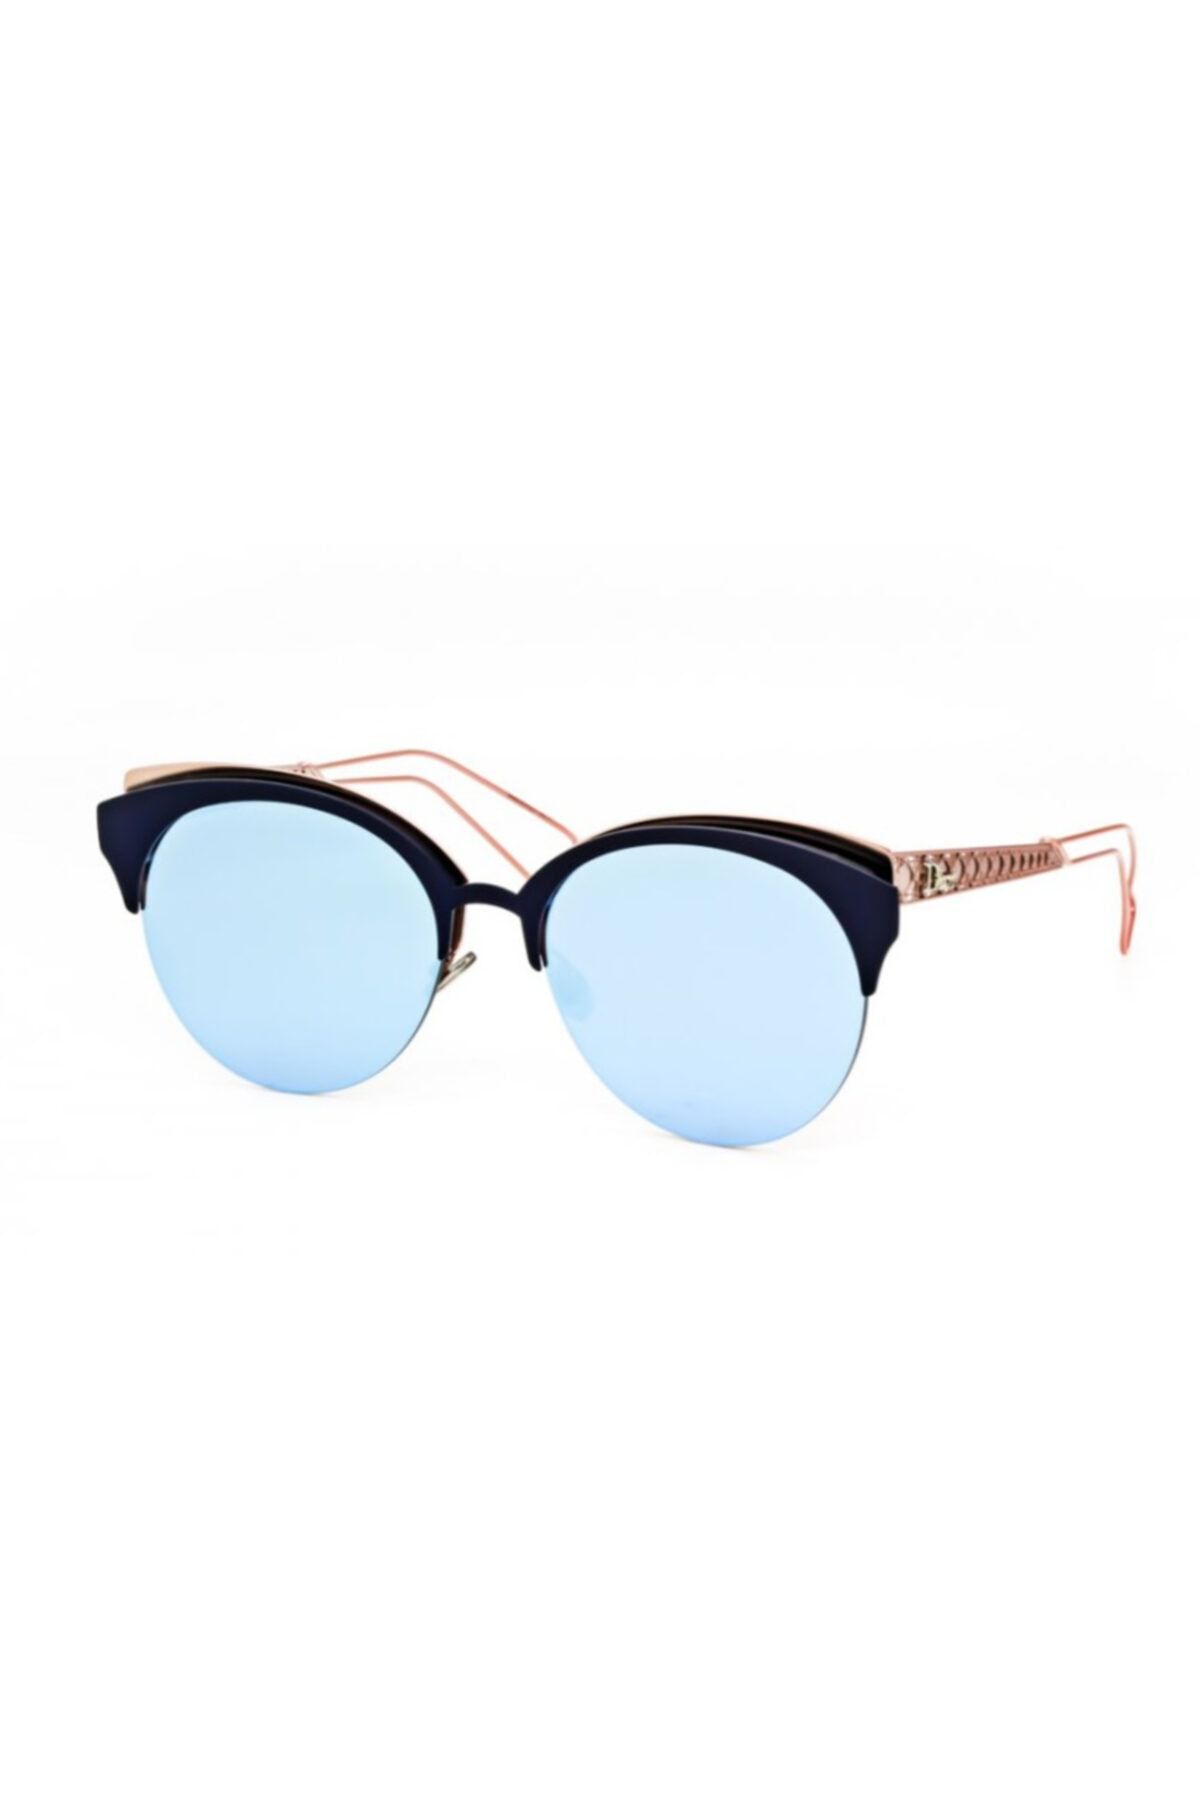 Dior Kadın Güneş Gözlüğü Cd Amaclub Fbxa4 55